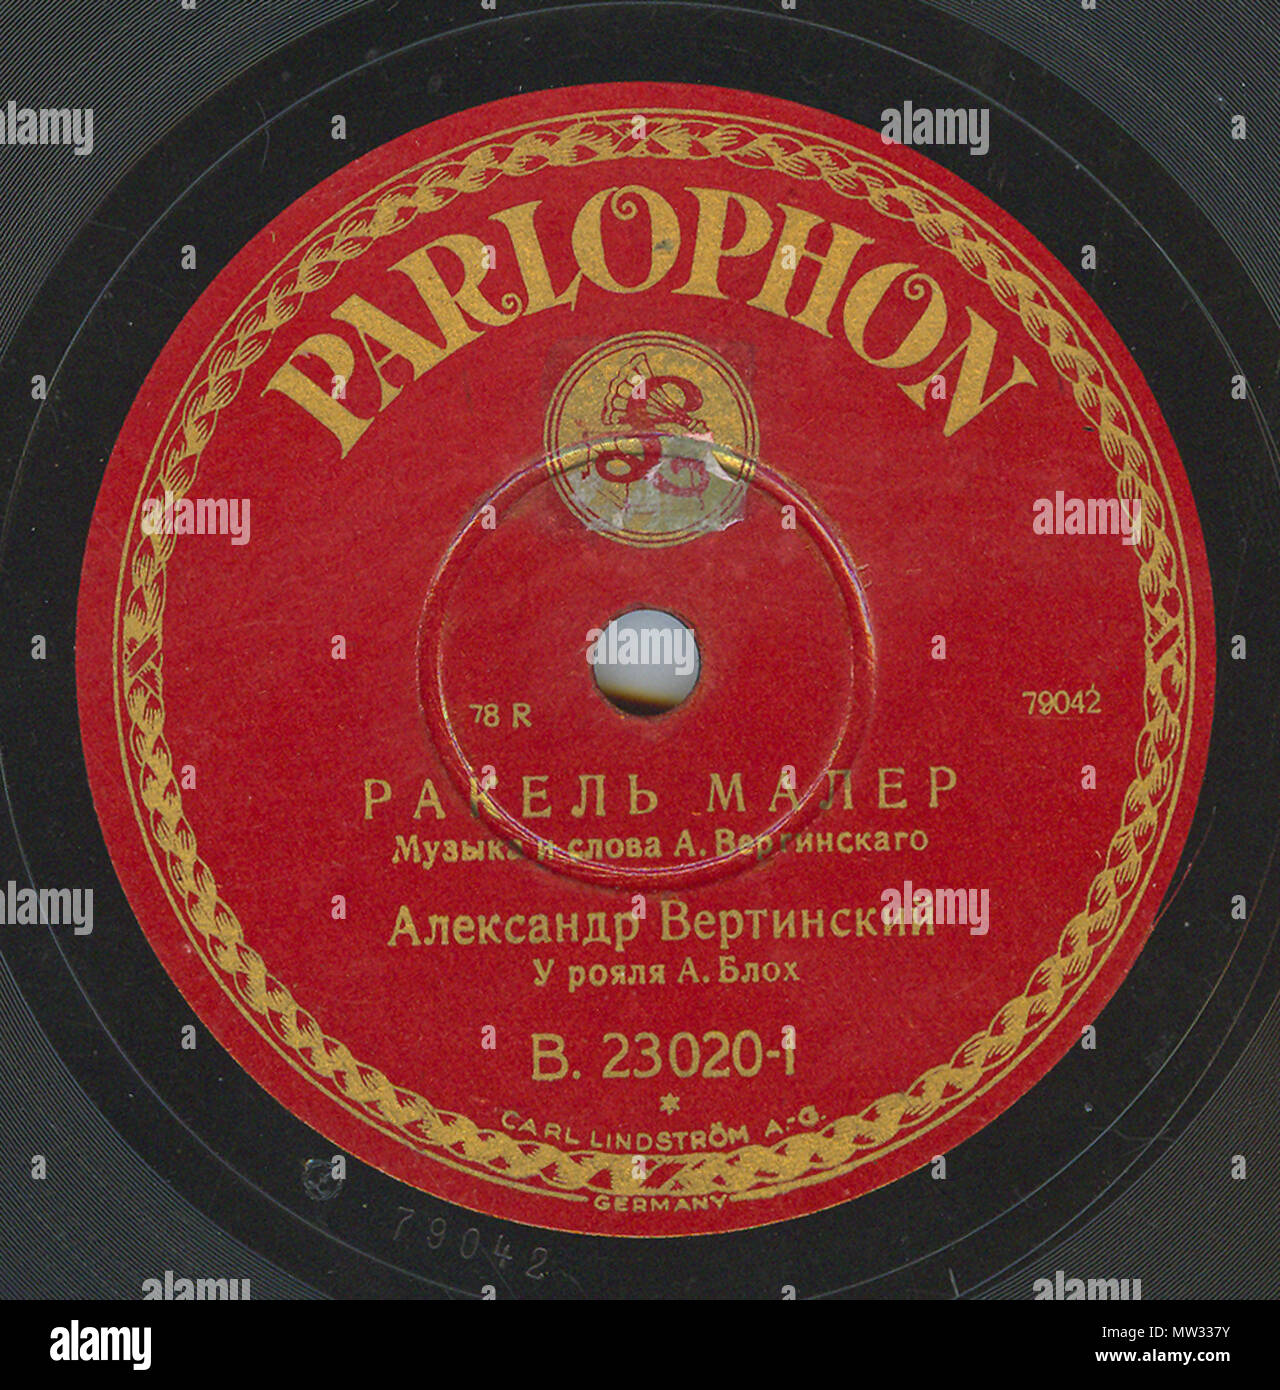 . Englisch: Vertinsky Parlophone B. 23020 01. 6. April 2010, 12:00:21. Parlophone 629 Vertinsky Parlophone B. 23020, 01. Stockfoto